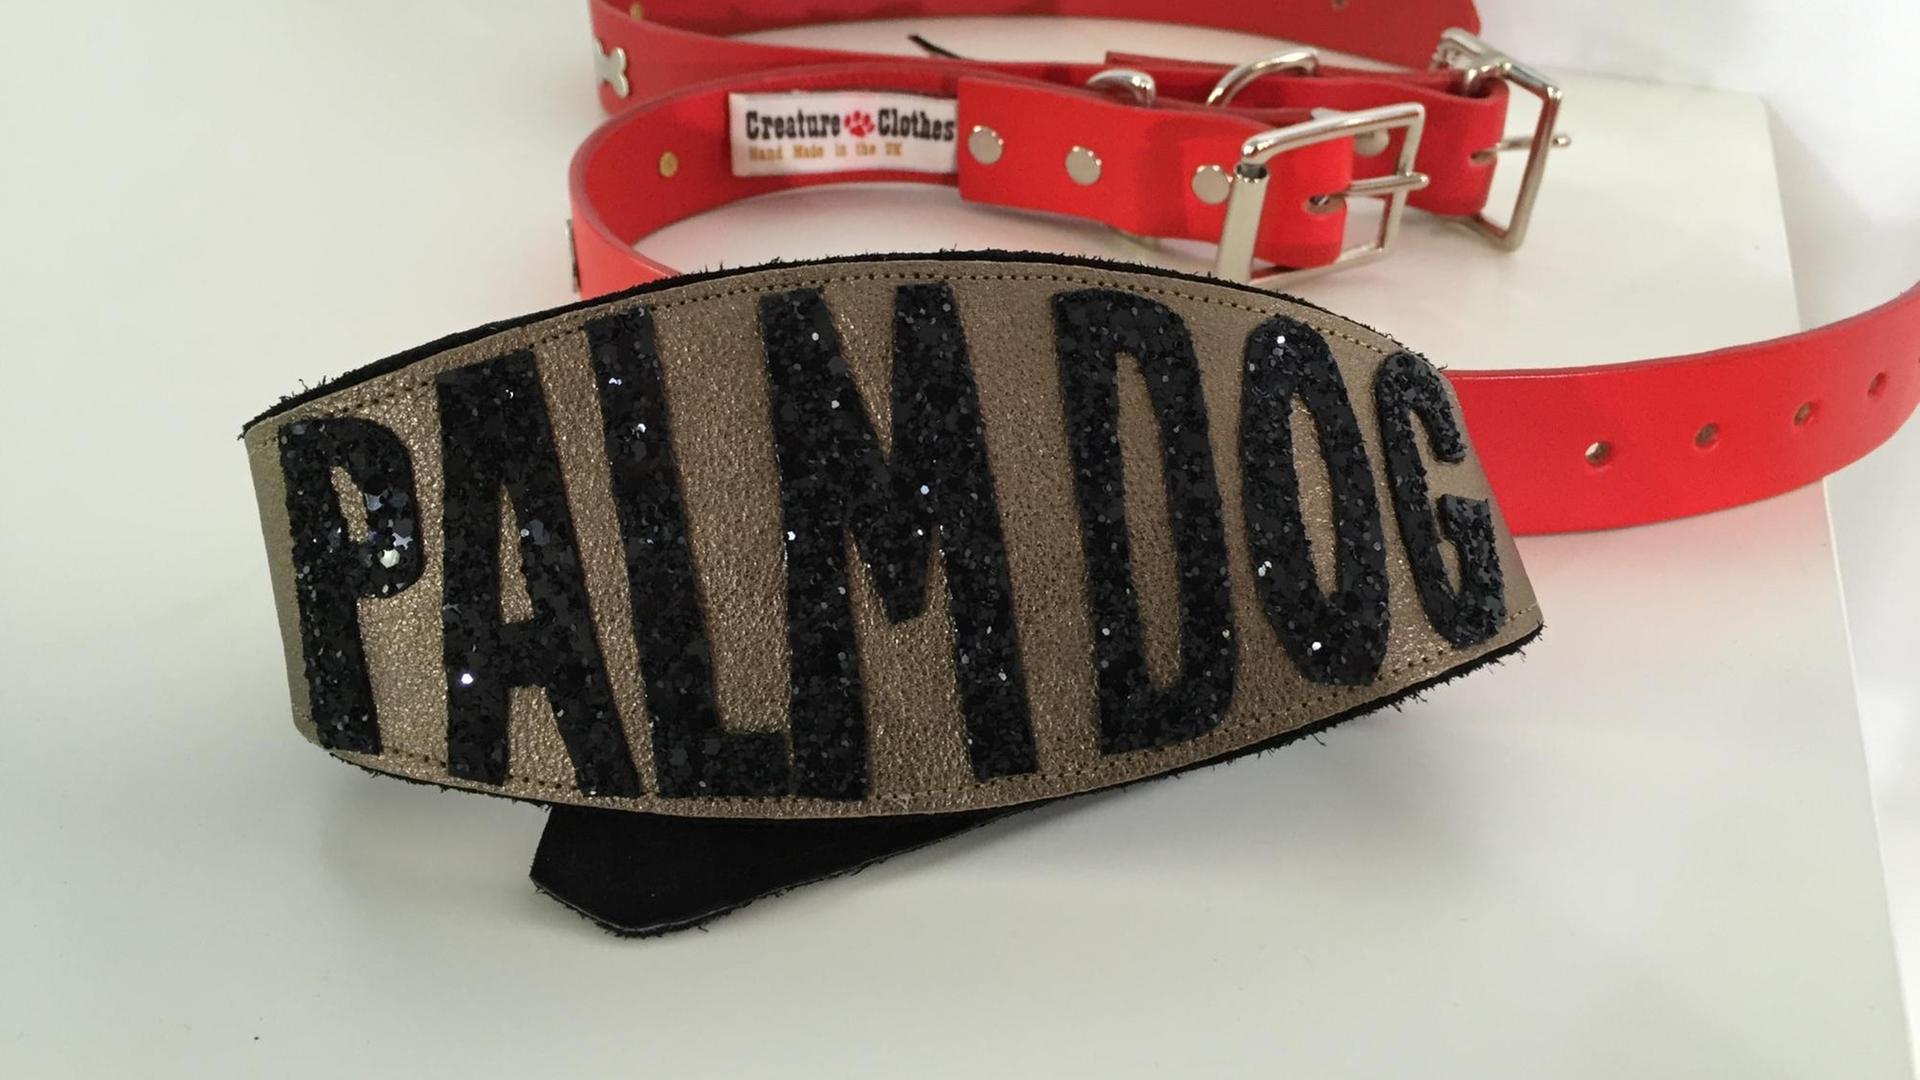 Farbfoto eines Hundehalsbands, auf dem Palm Dog steht. Es ist eine Auszeichnung für den besten Vierbeiner in den Filmen beim Filmfestival Cannes.